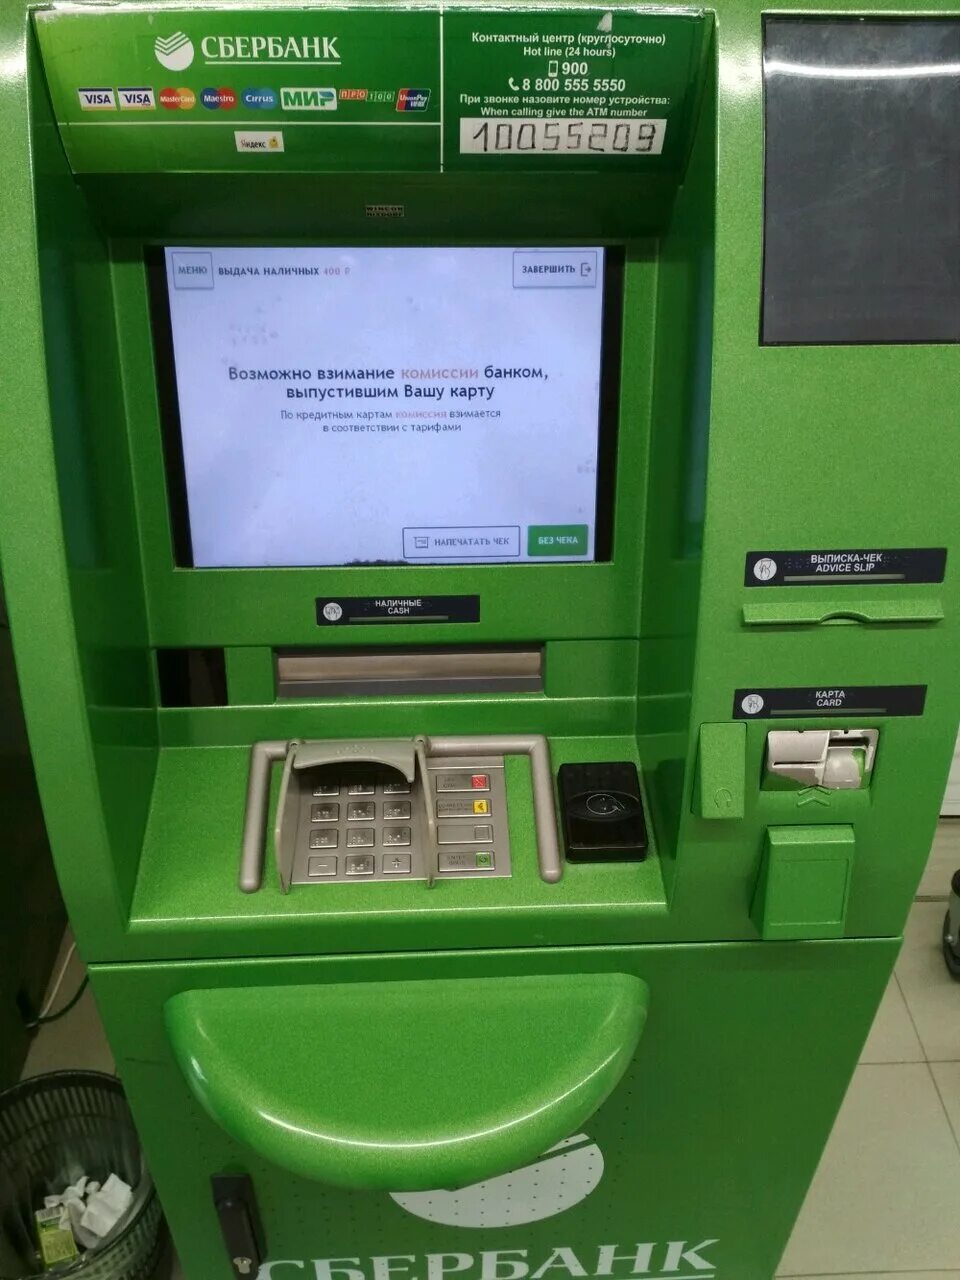 Местоположение банкоматов сбербанк. Банкомат Сбербанка 2022. Терминал Сбербанка. Неработающий терминал Сбербанка. Экран банкомата.